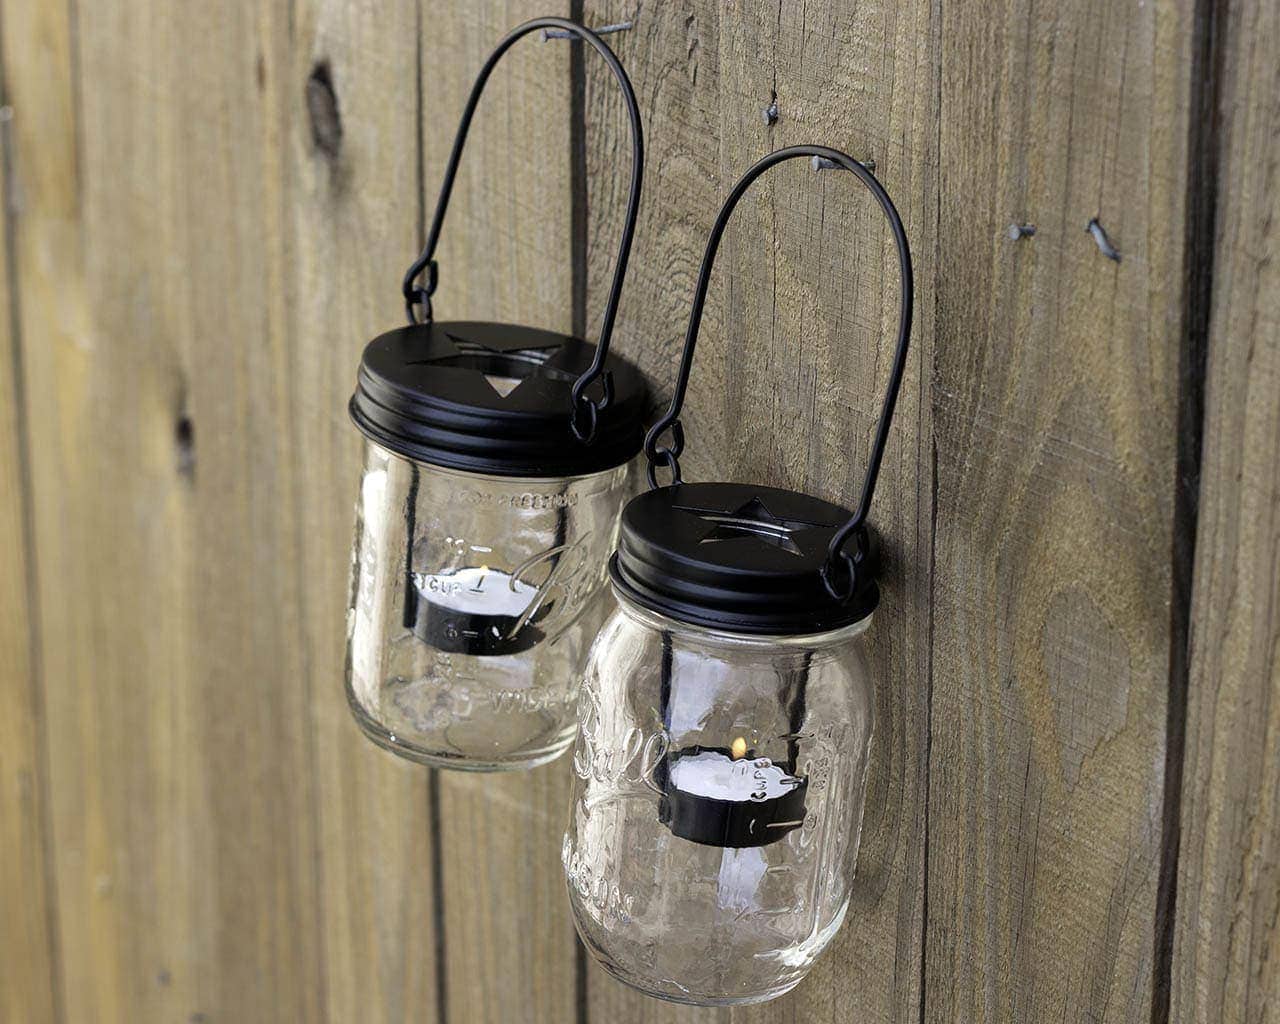 mason-jar-lifestyle-matte-black-primitive-tea-light-candle-holder-star-handle-up-hanging-regular-wide-mouth-mason-jars-fence